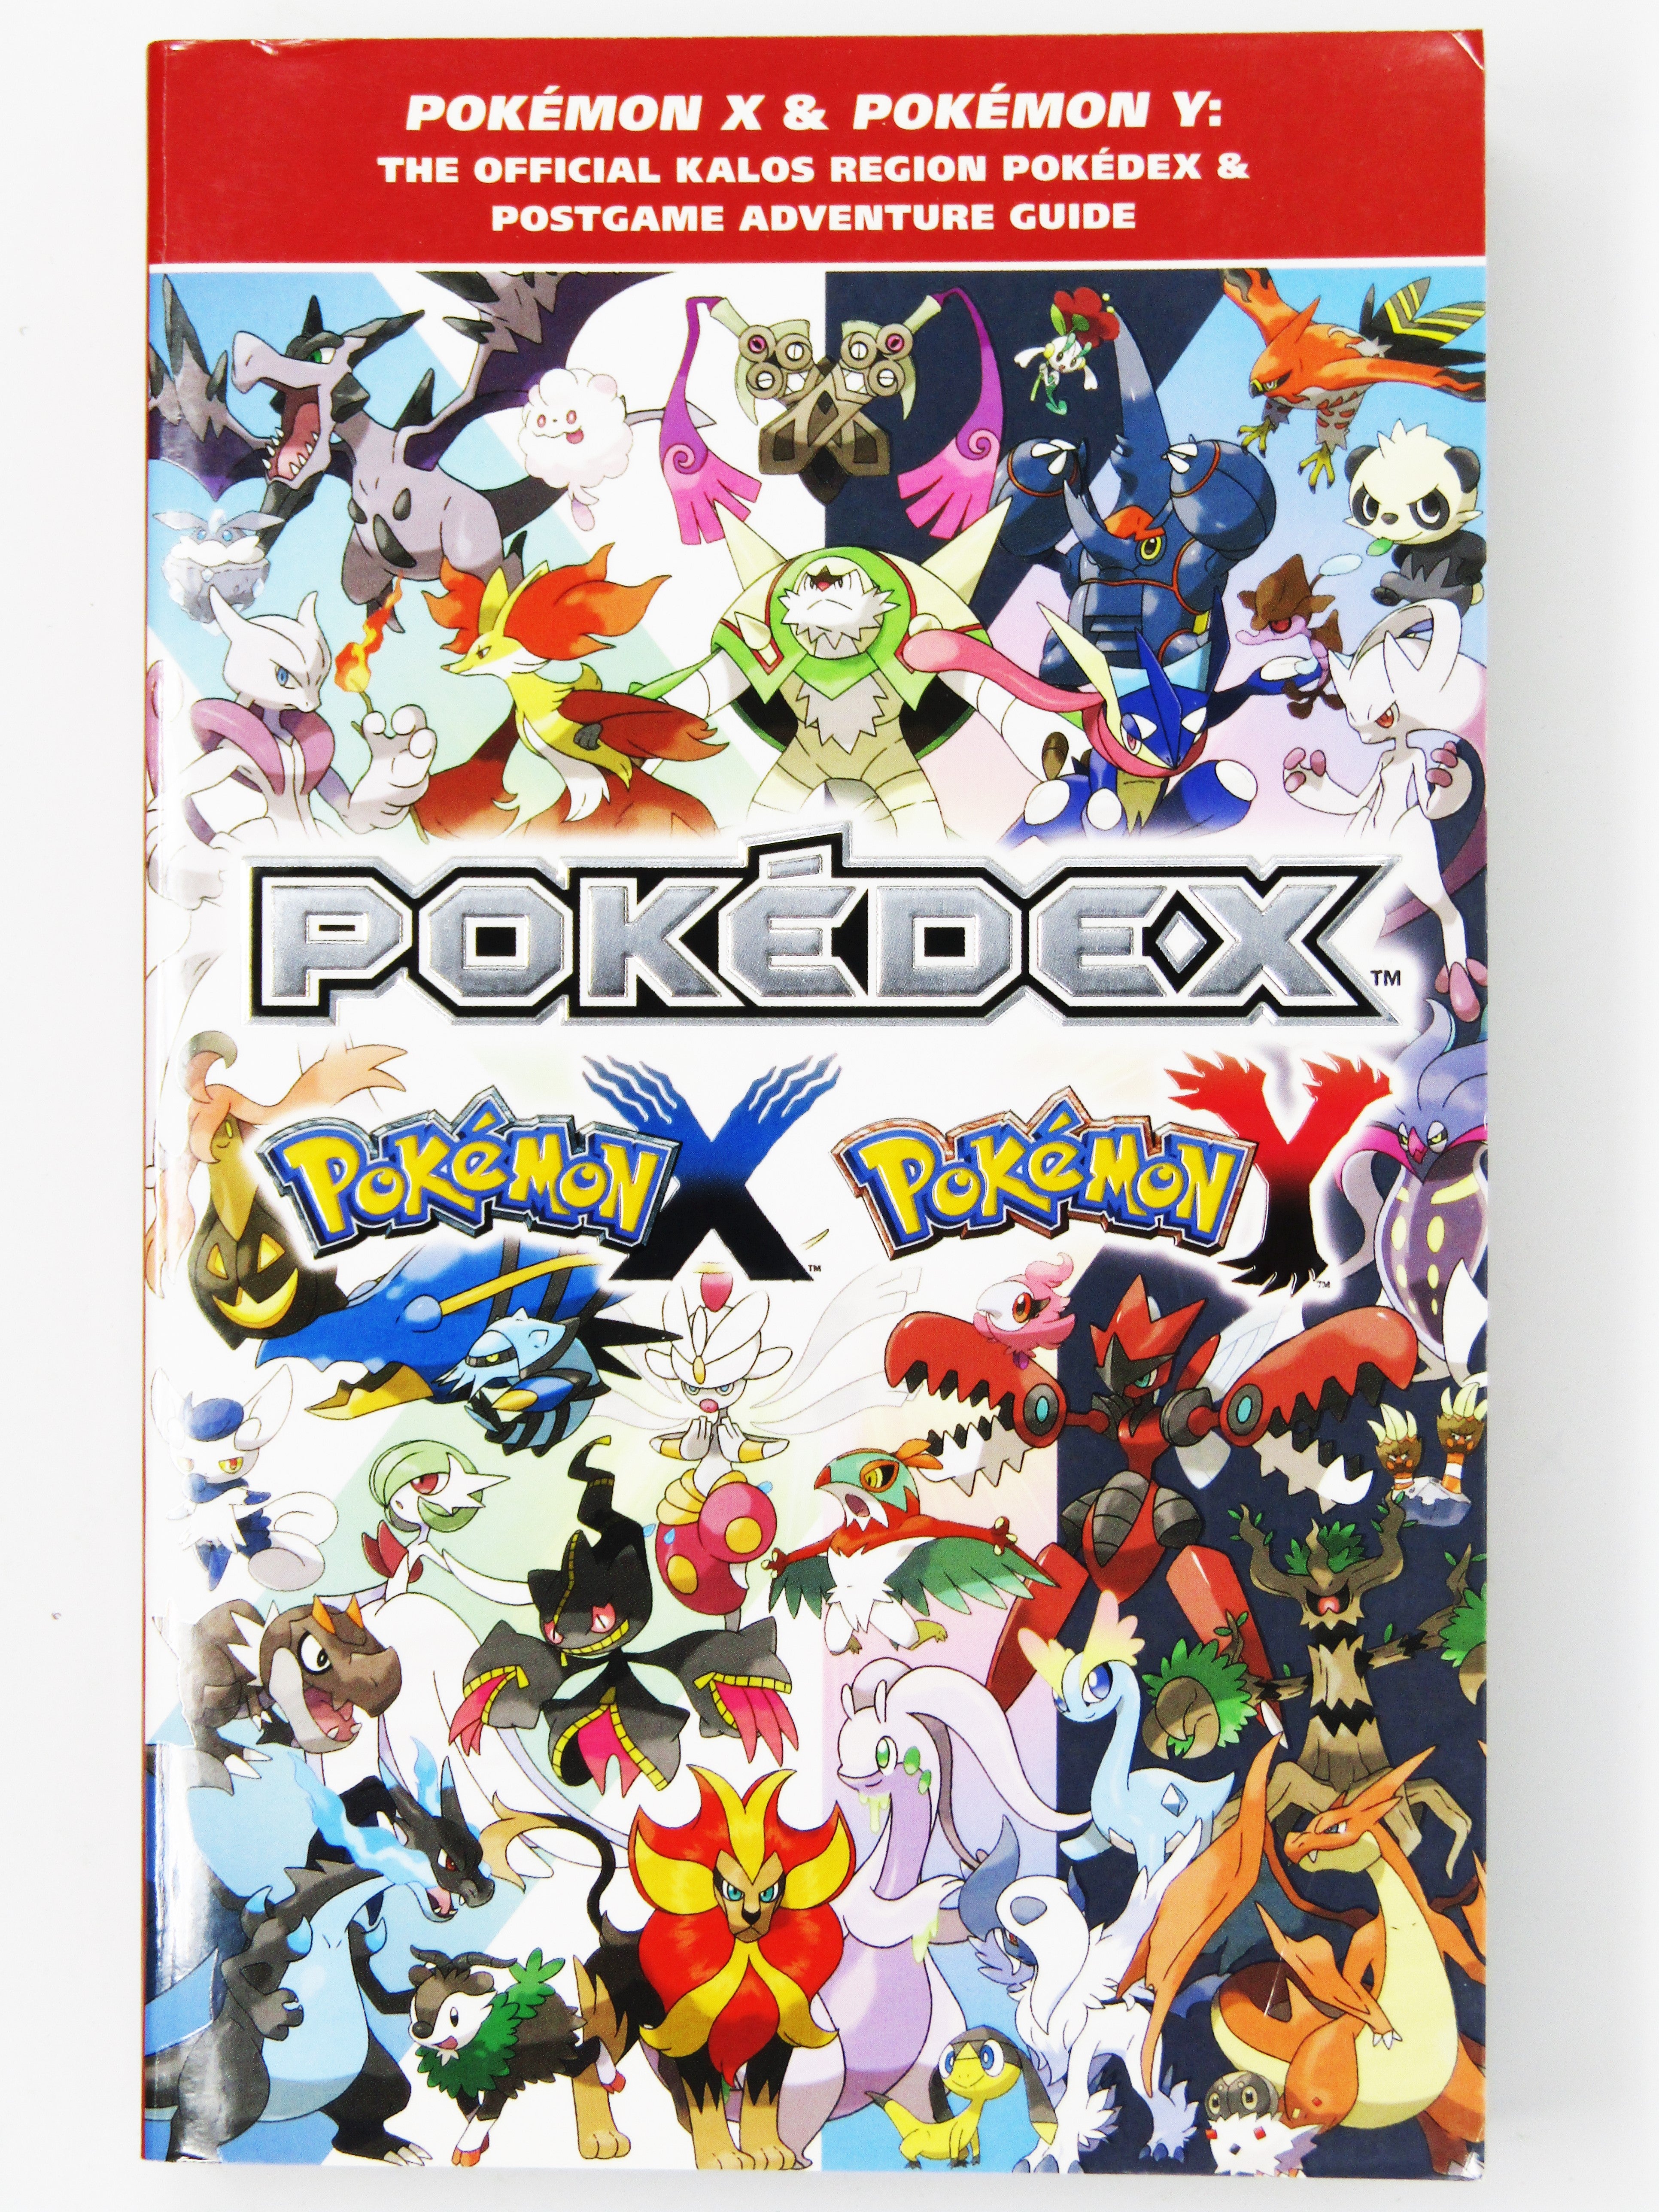 Pokémon X and Pokémon Y Pokédex, gonintendo_flickr